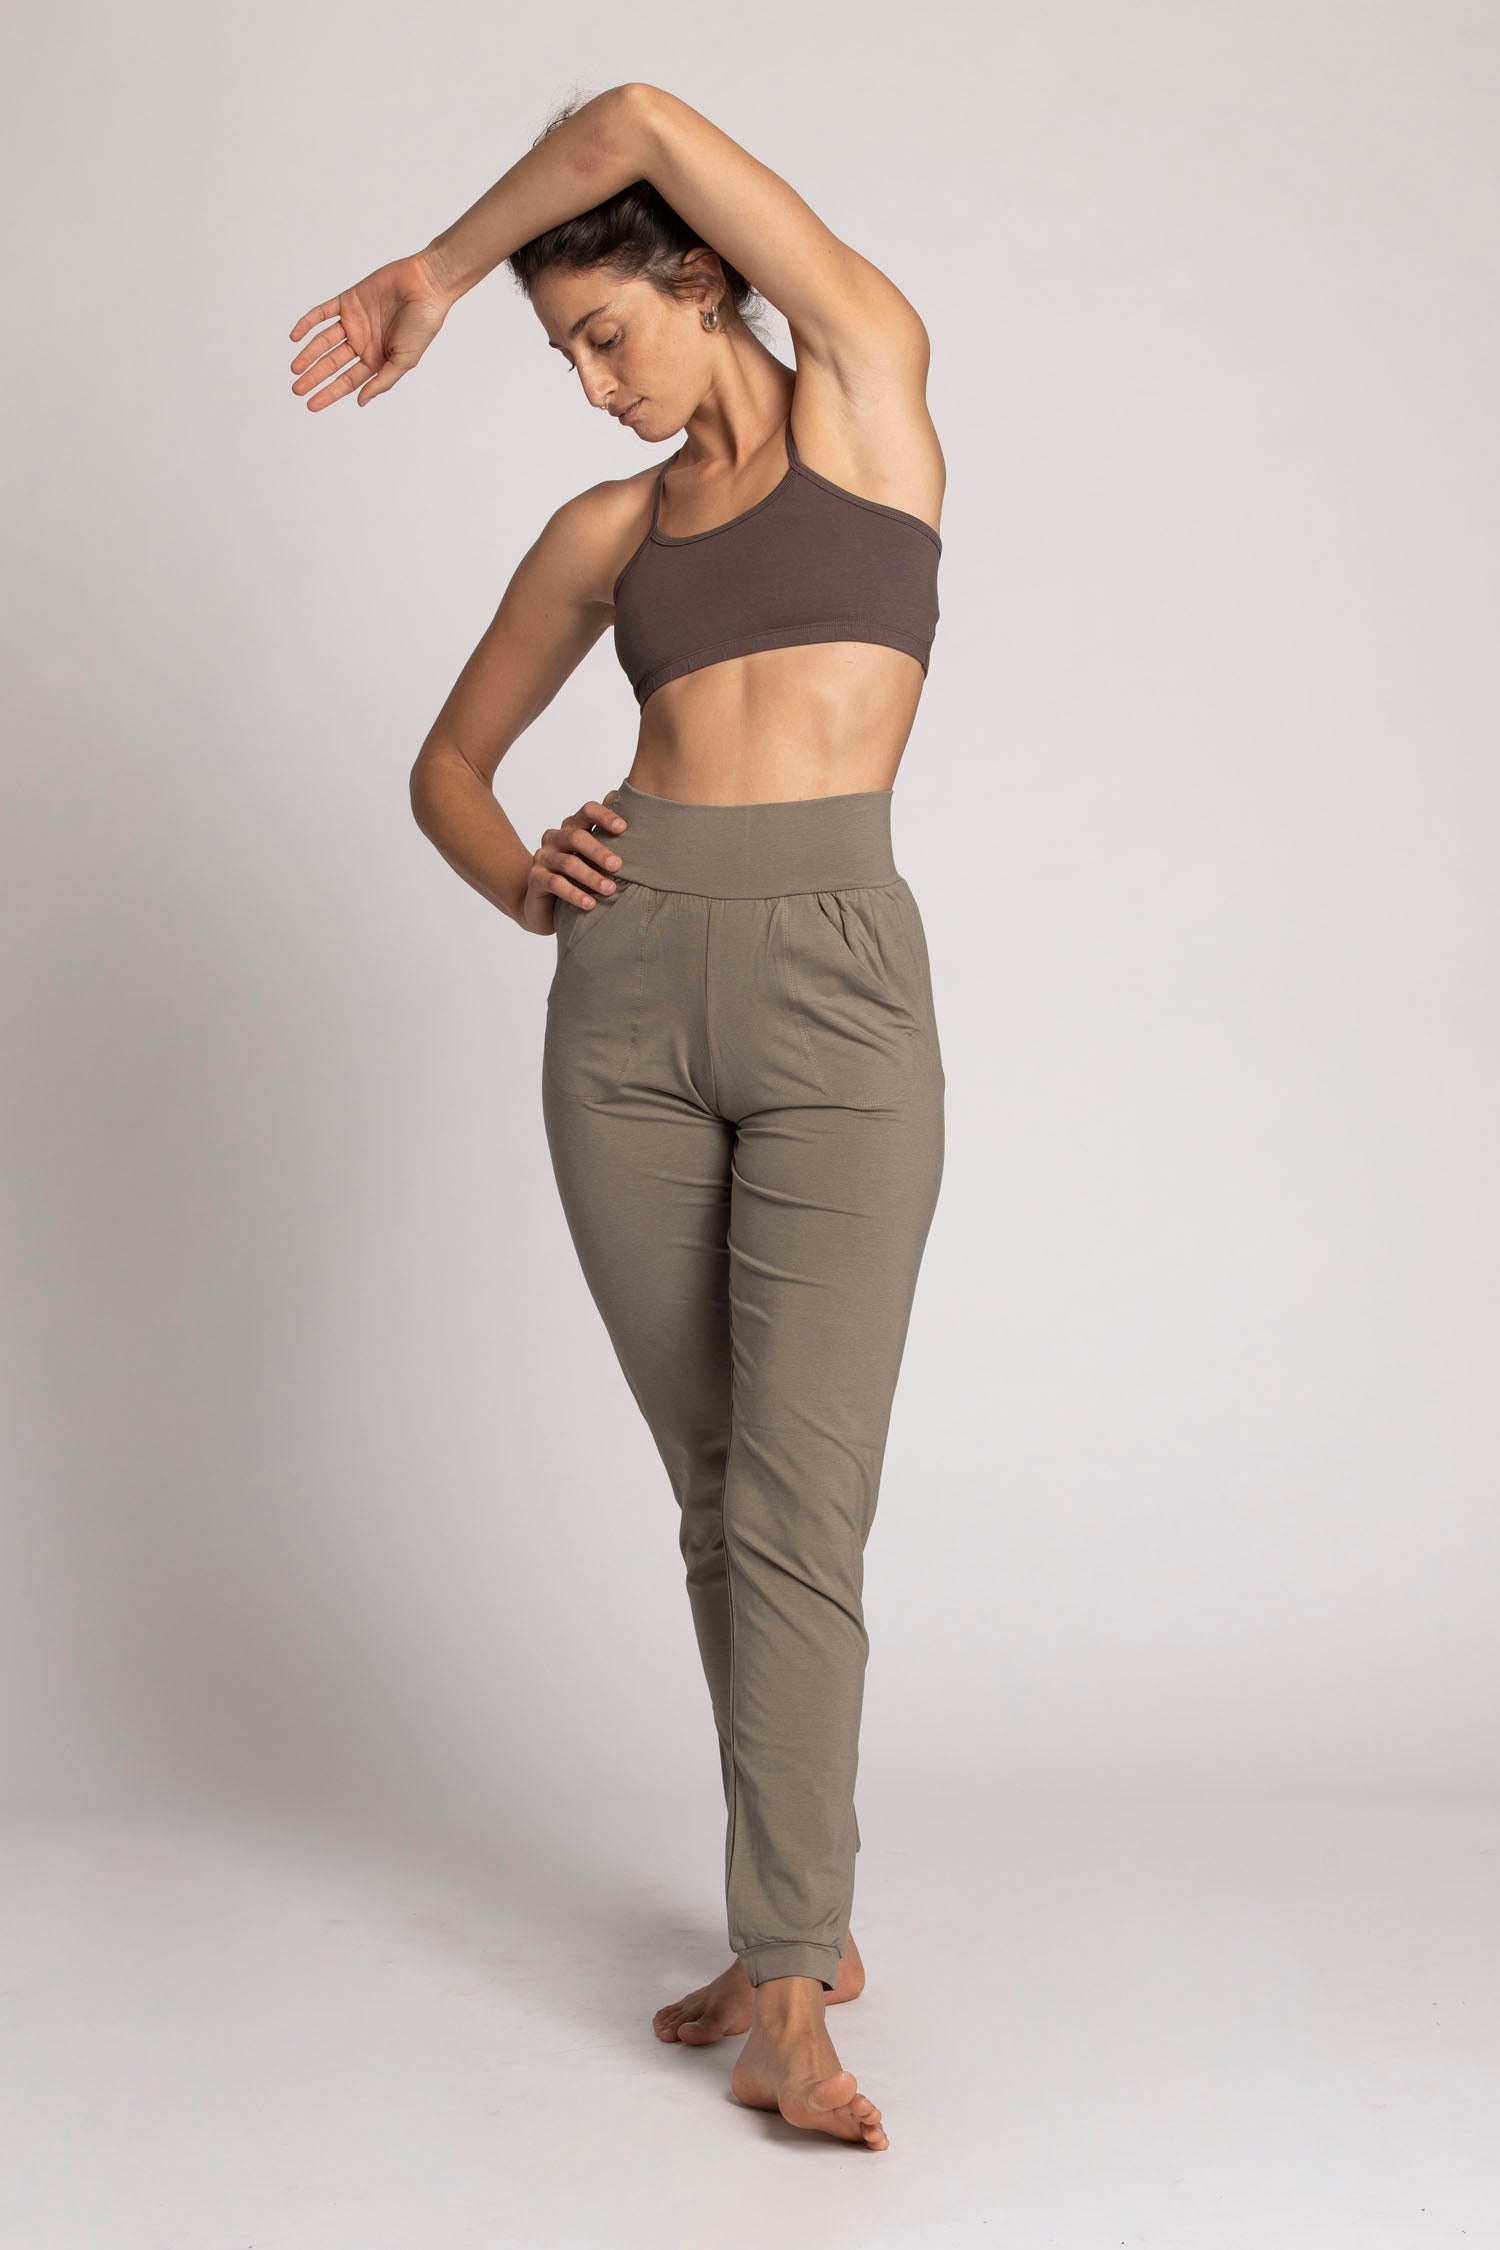 Buy Women Jogger Pants with Pockets Drawstring Elastic High Waist Loose  Yoga Pants Joggers Huaishu at Amazon.in